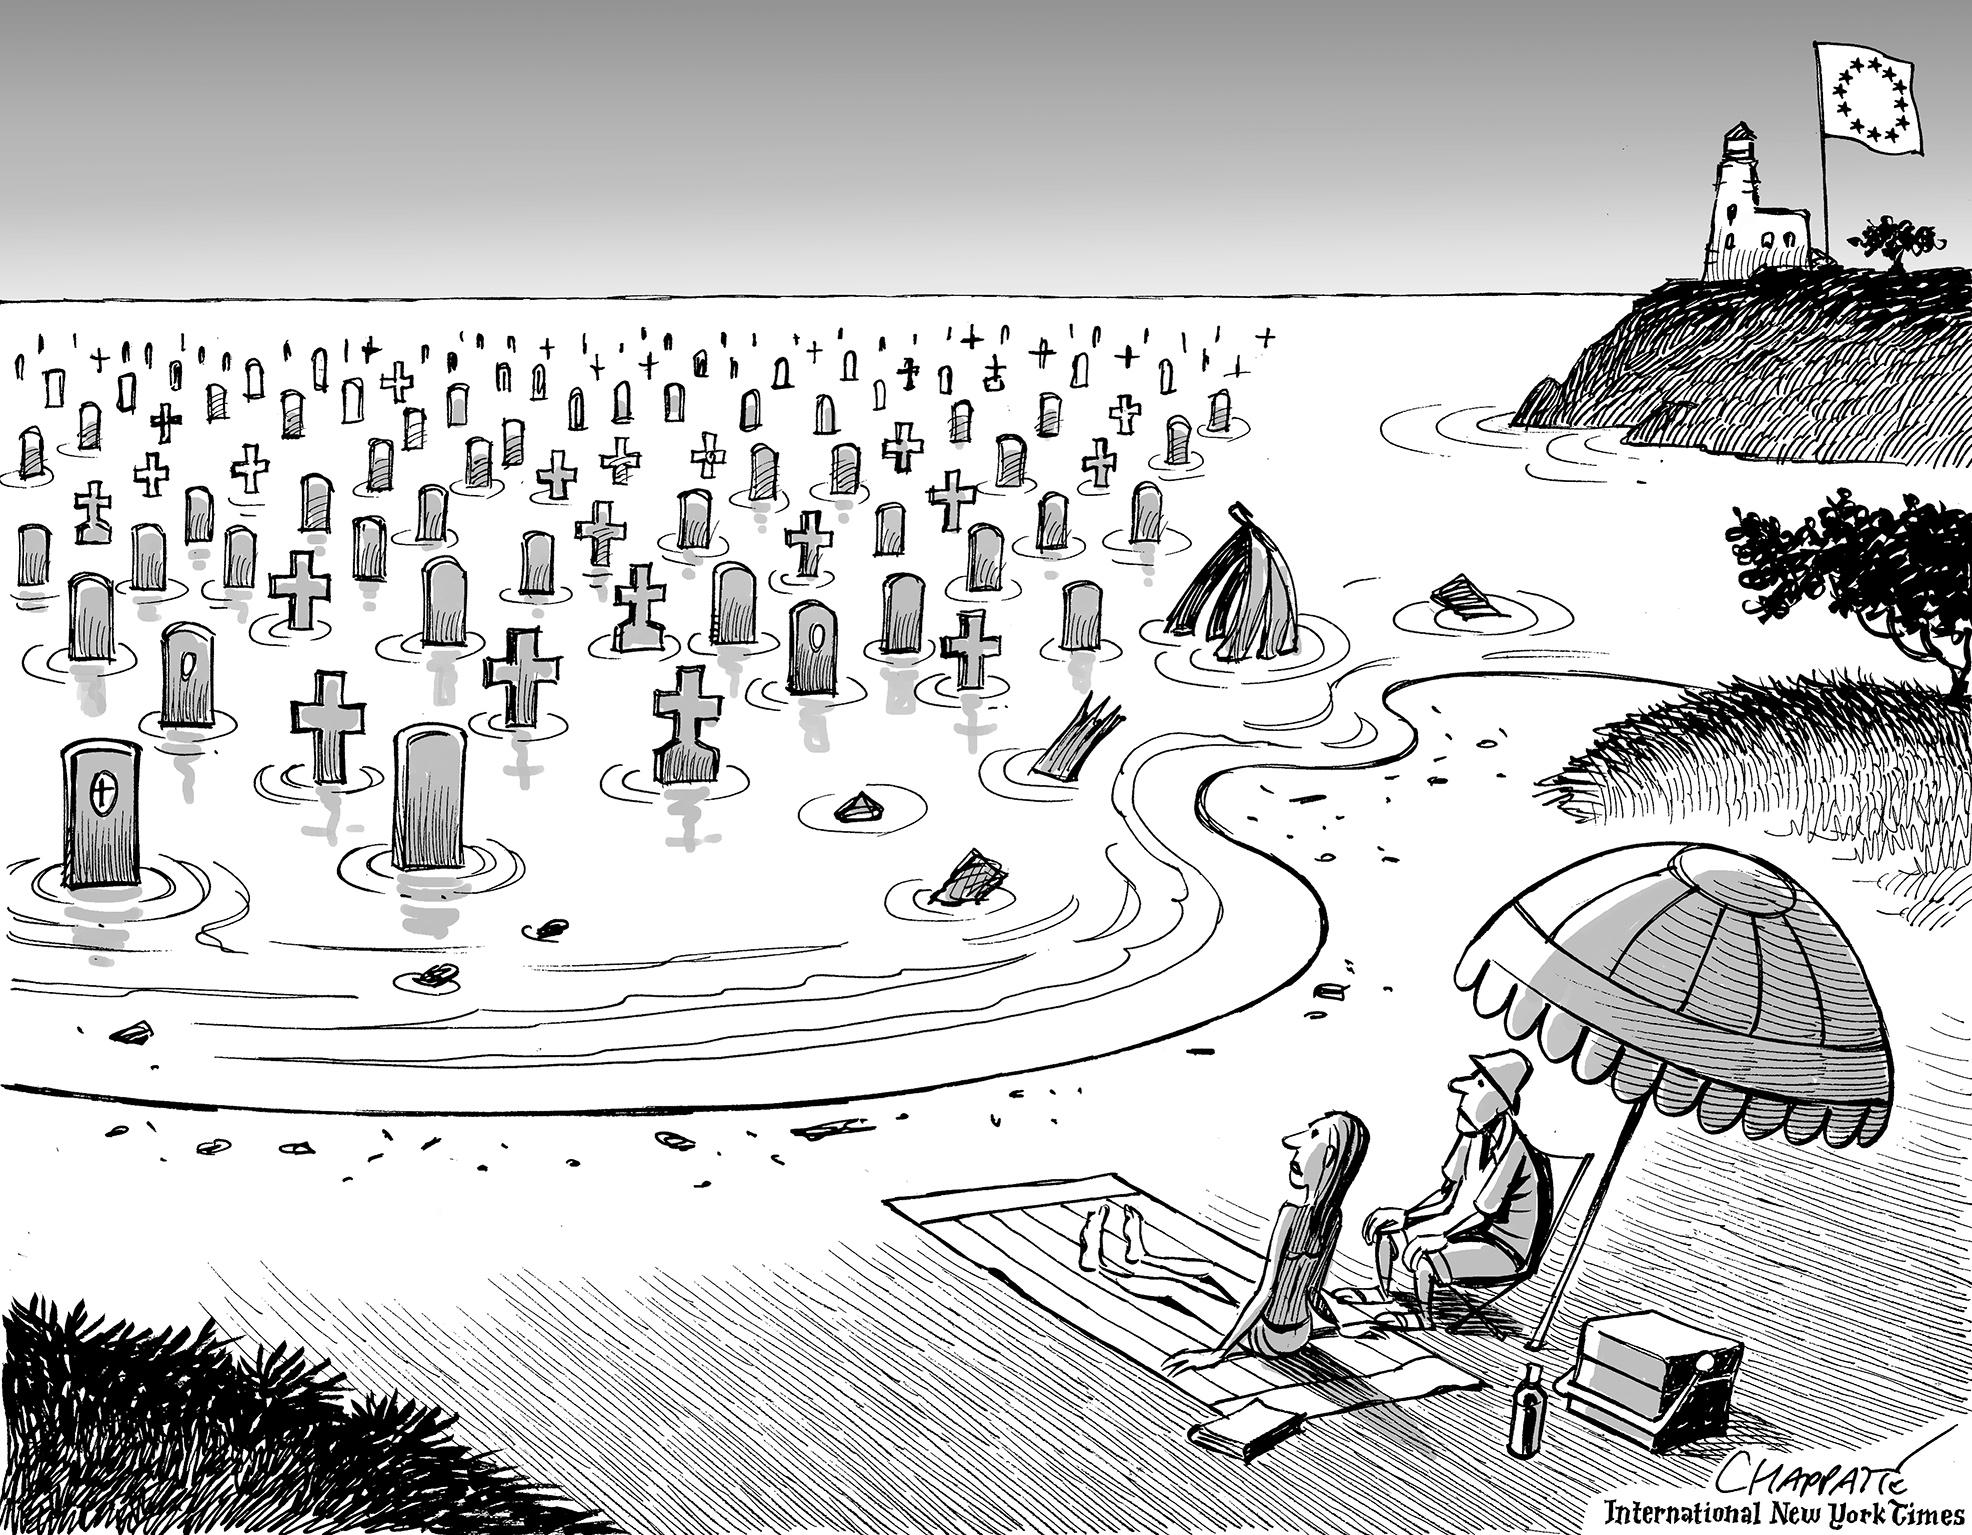 Death in the Mediterranean